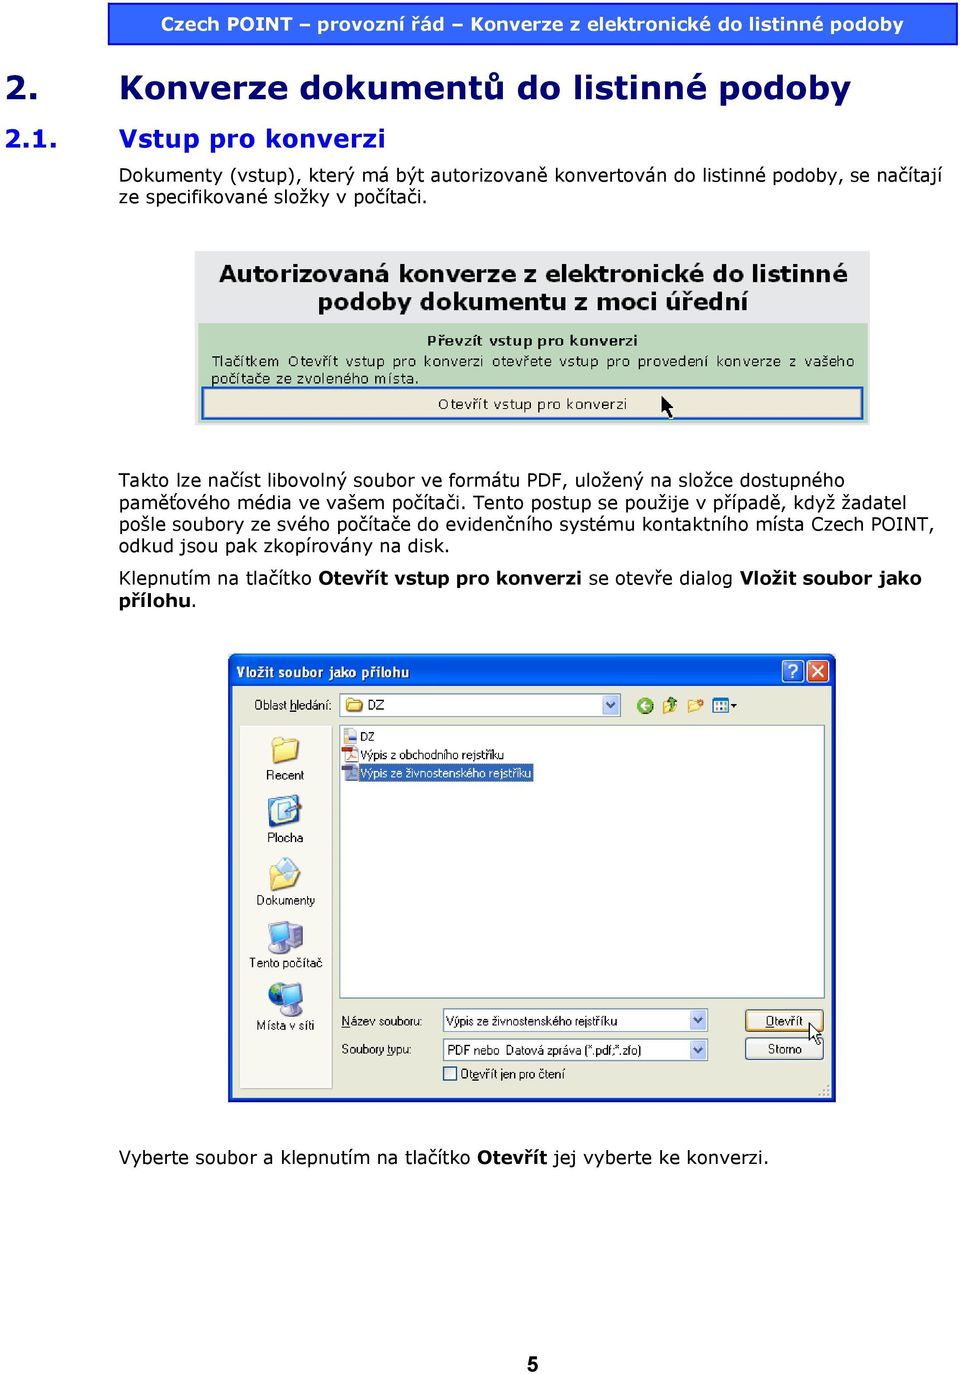 Takto lze načíst libovolný soubor ve formátu PDF, uložený na složce dostupného paměťového média ve vašem počítači.